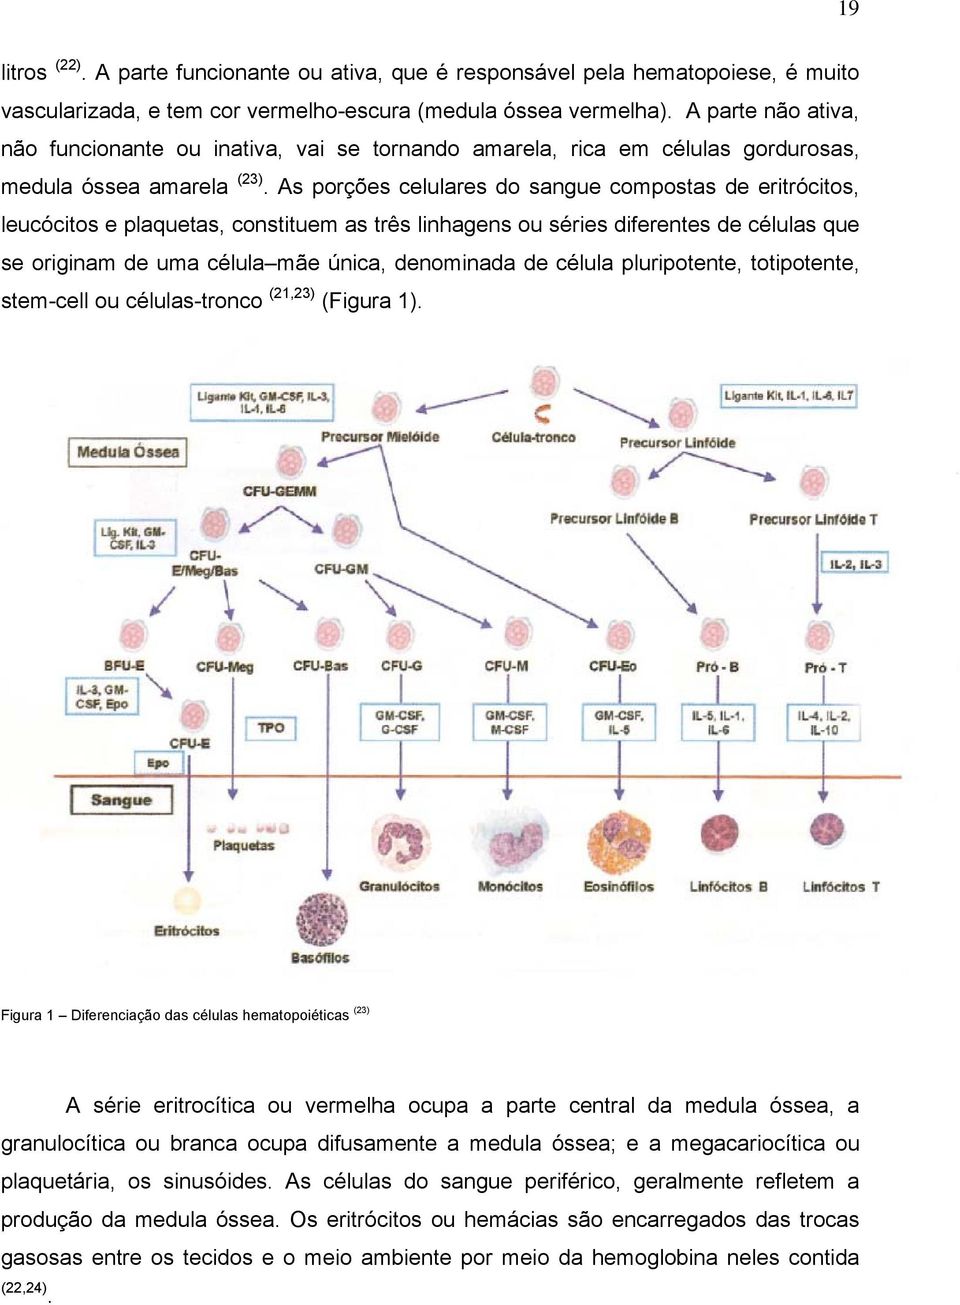 As porções celulares do sangue compostas de eritrócitos, leucócitos e plaquetas, constituem as três linhagens ou séries diferentes de células que se originam de uma célula mãe única, denominada de